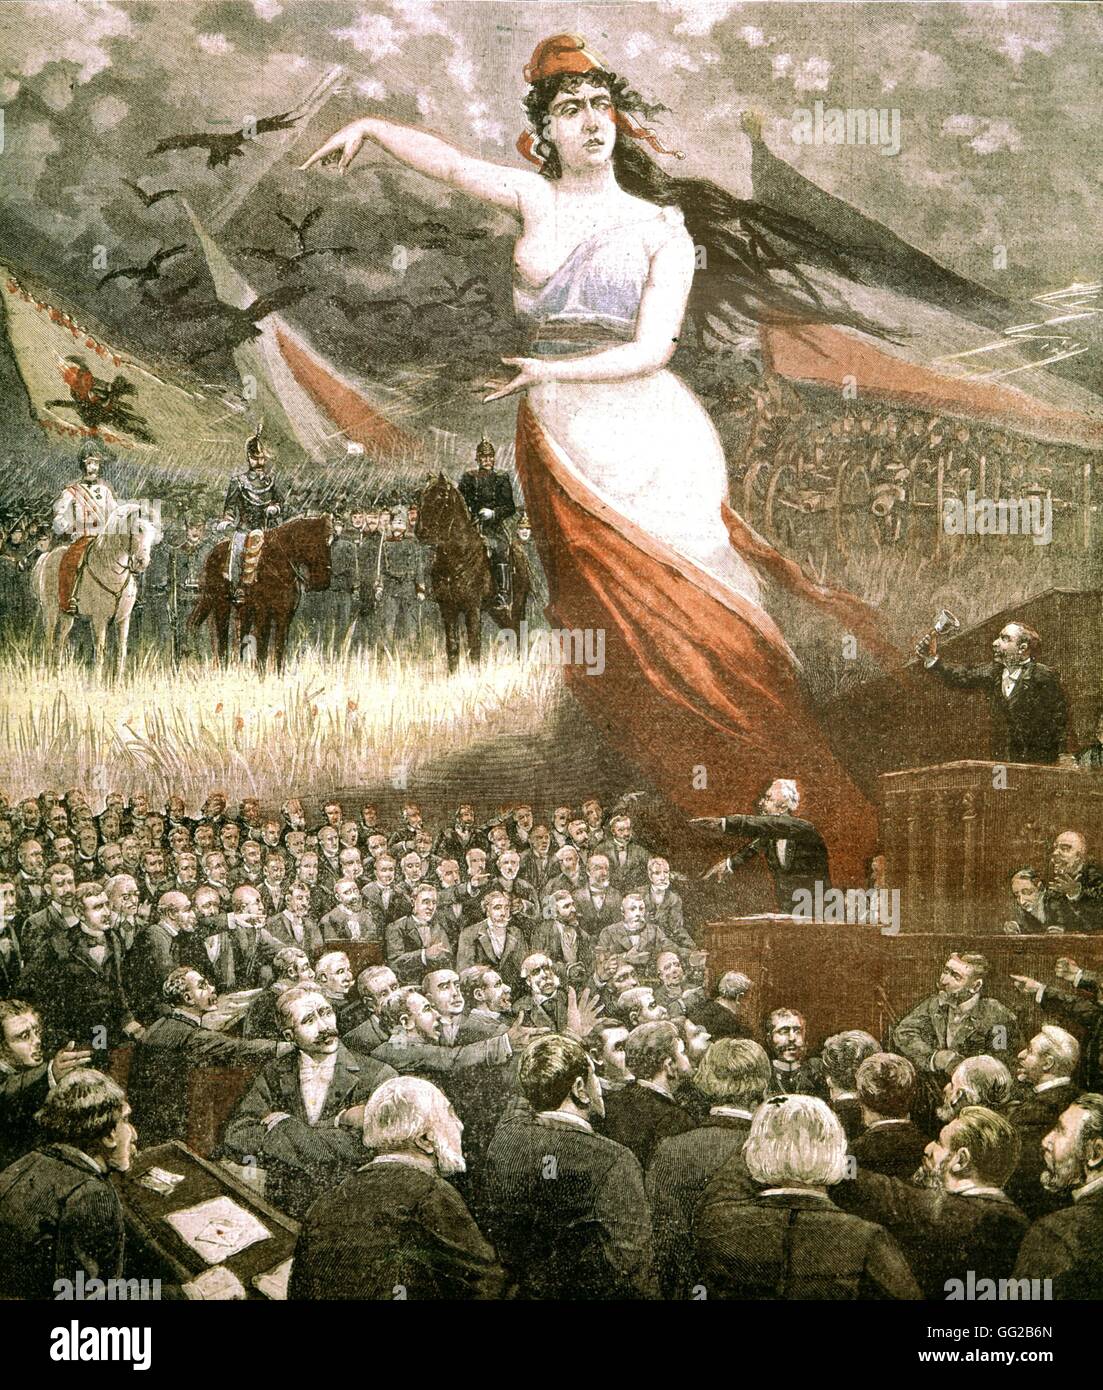 Marianne puntando verso la Francia ennemies, nel frattempo sessioni parlamentari vengono agitati in Francia, 1893 Foto Stock